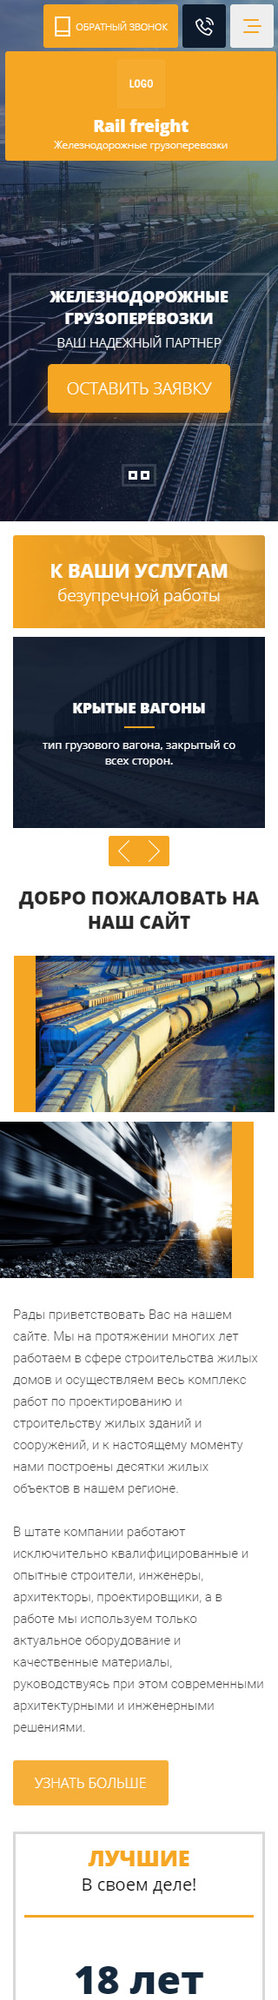 Готовый Сайт-Бизнес № 2664103 - Железнодорожные грузоперевозки (Мобильная версия)